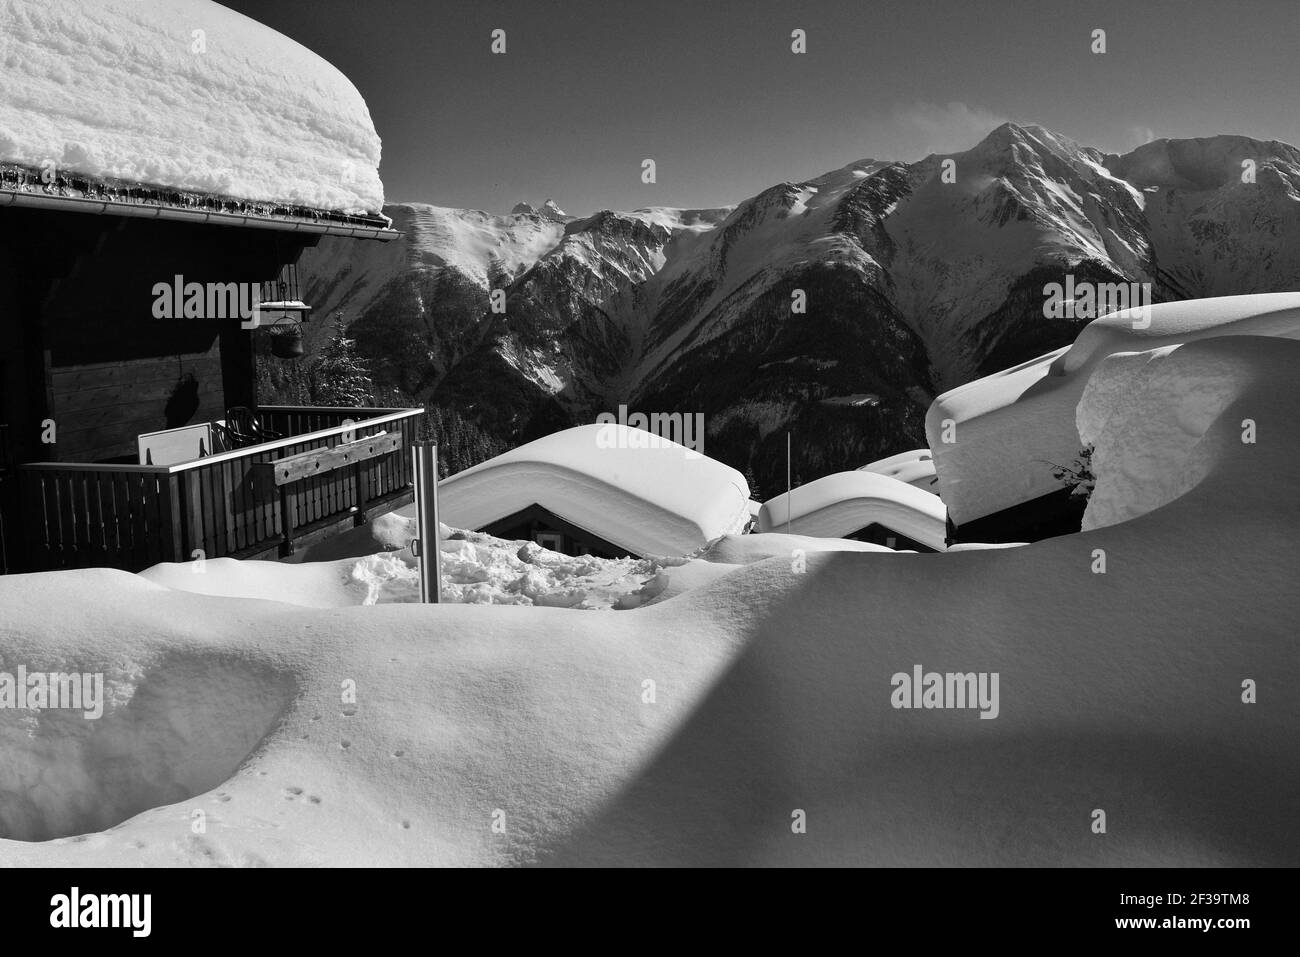 Monochrome de chalets avec une vue sous la neige profonde avec ciel bleu dans une station de ski Banque D'Images